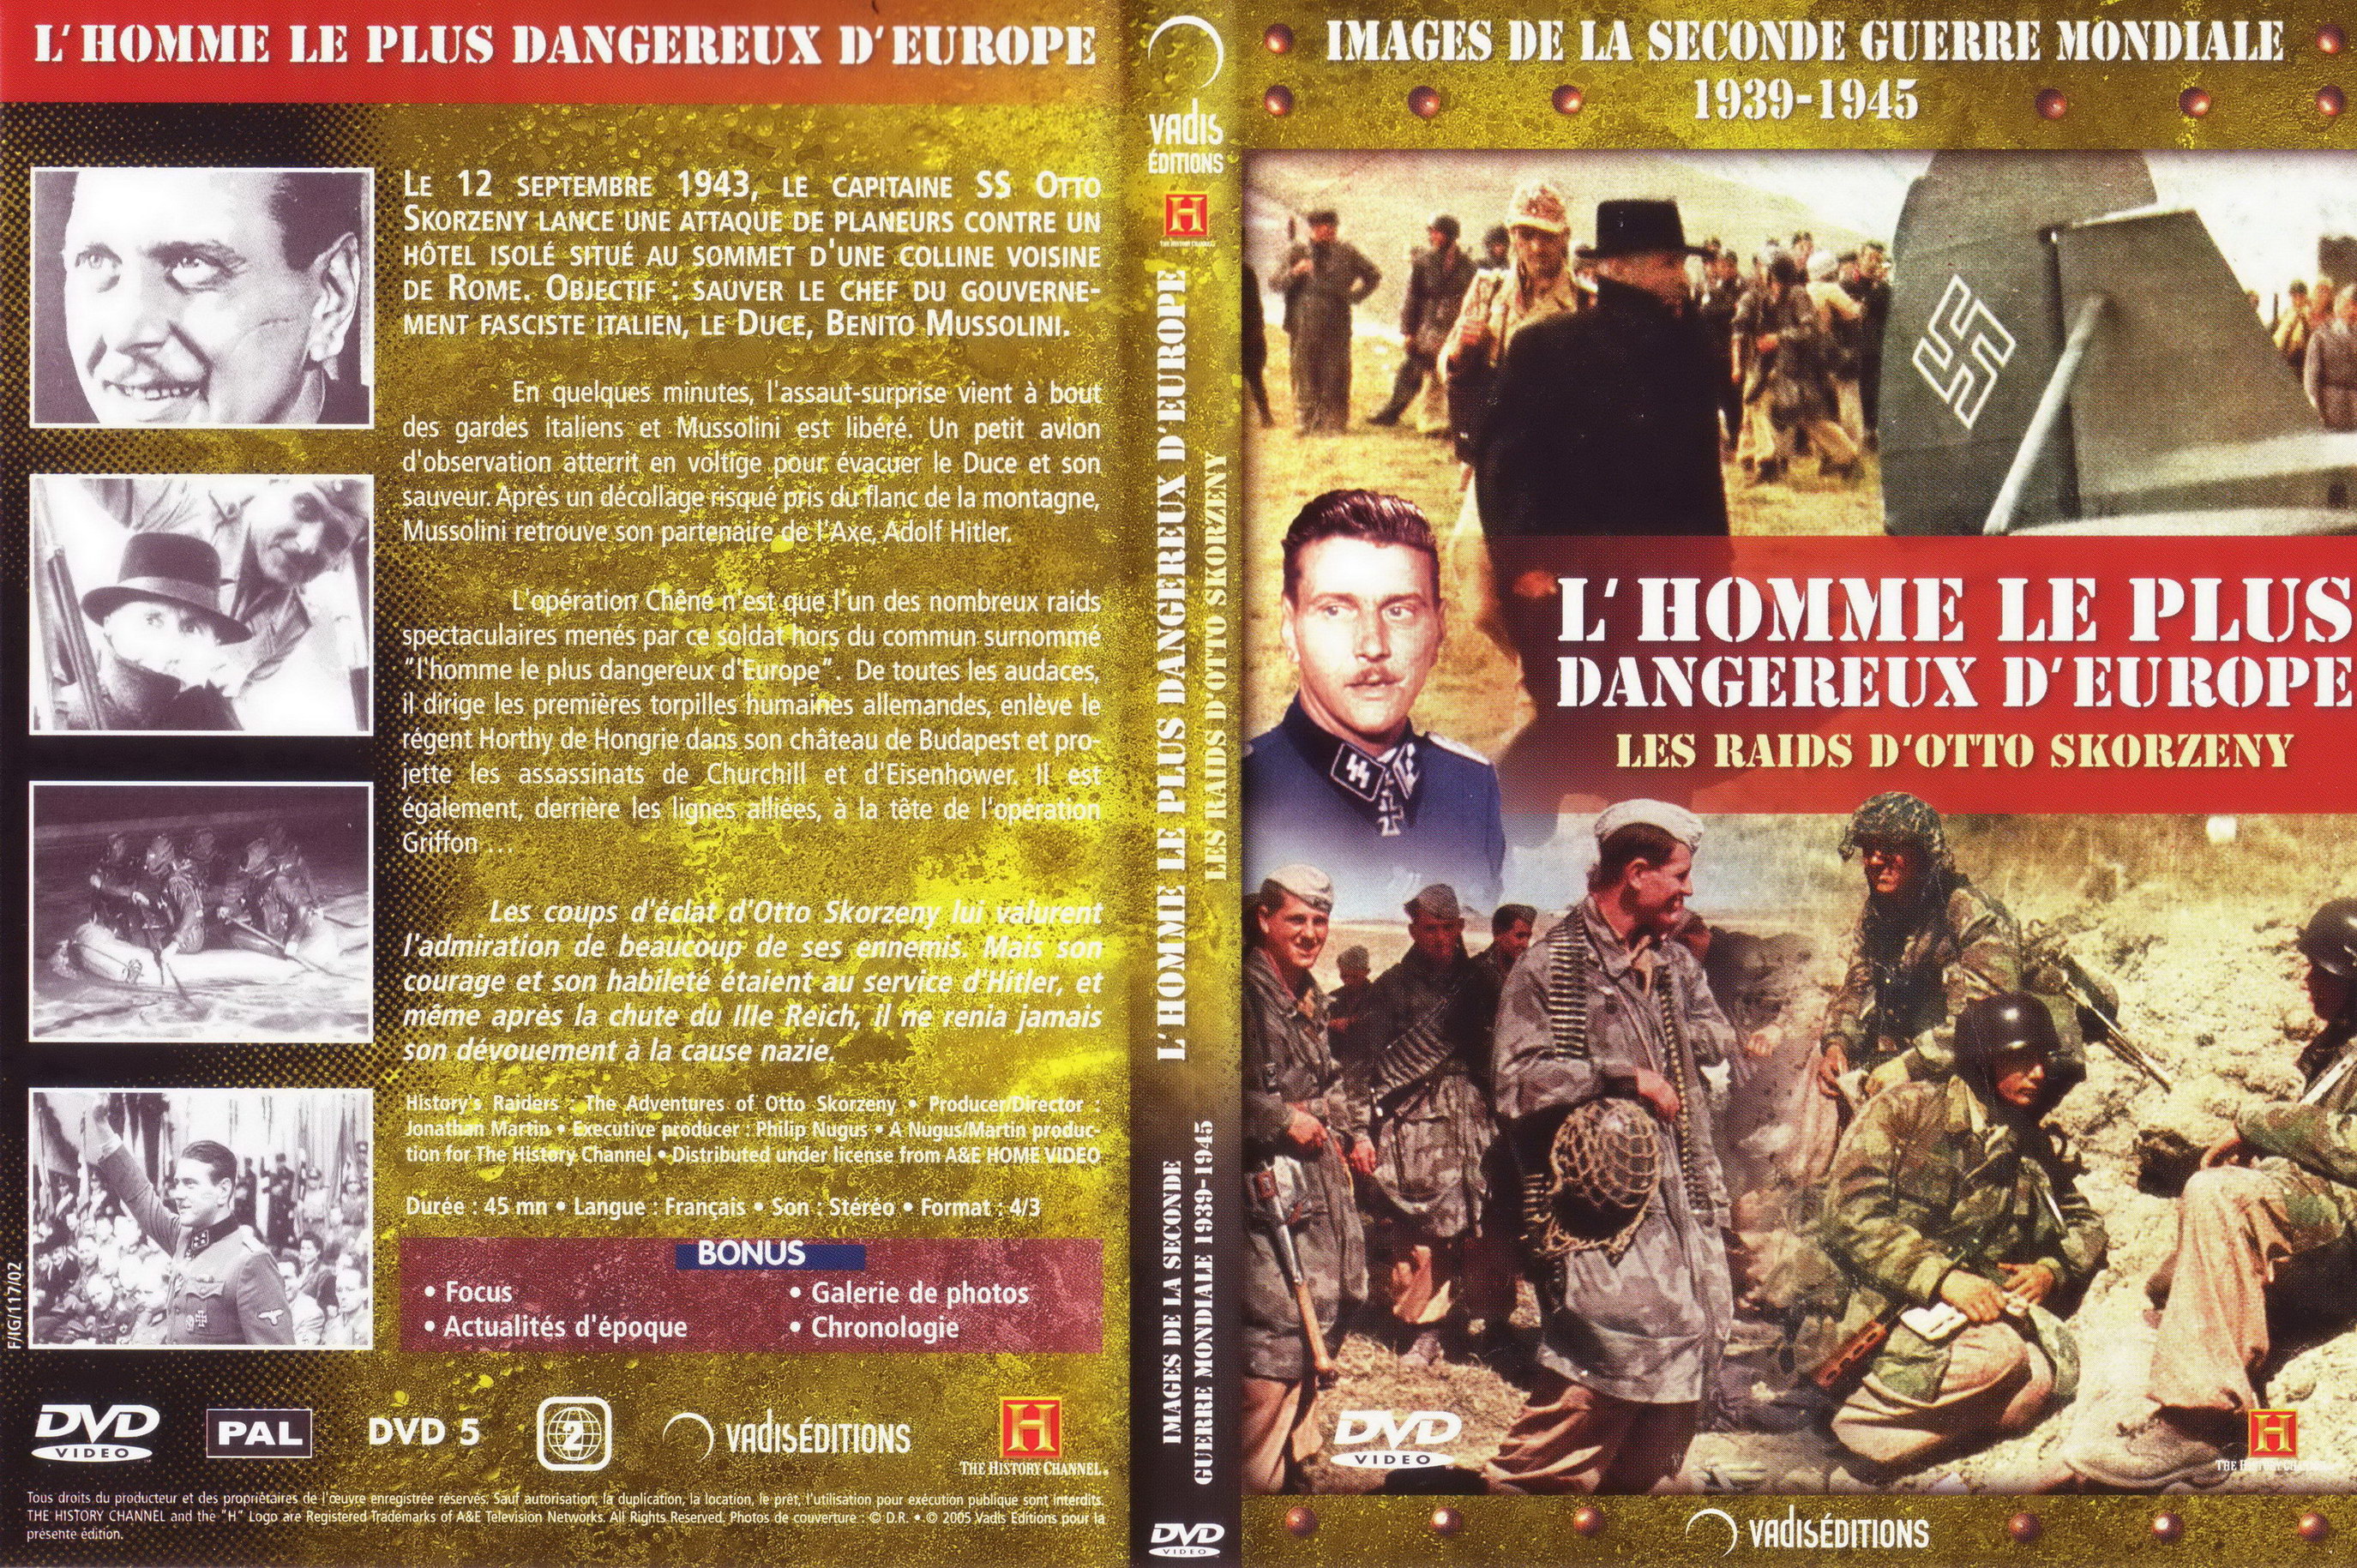 Jaquette DVD Images de la seconde guerre mondiale -  L